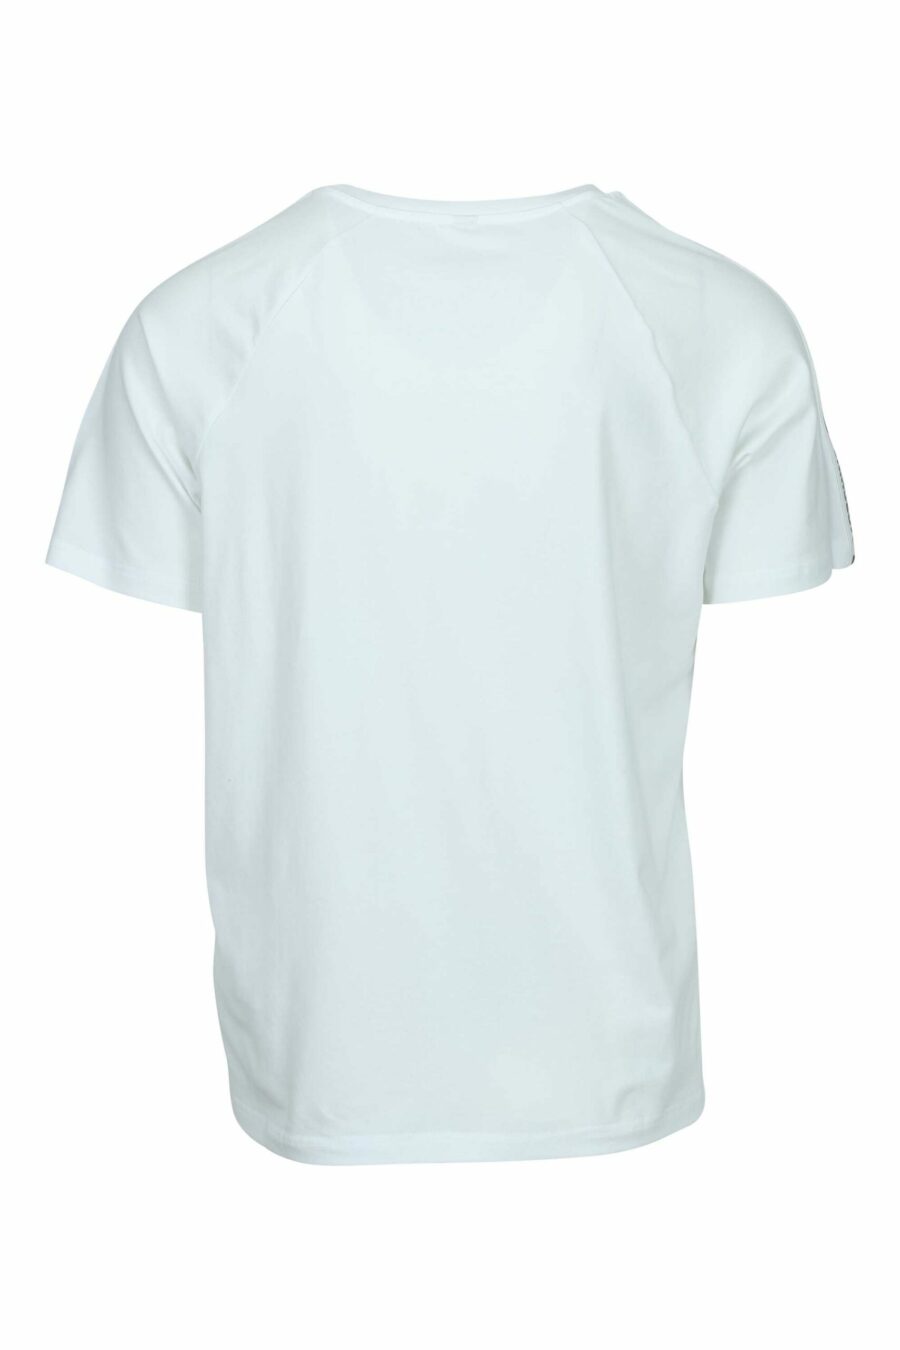 Camiseta blanca con logo oso "underbear" en cinta hombros - 667113602462 1 scaled